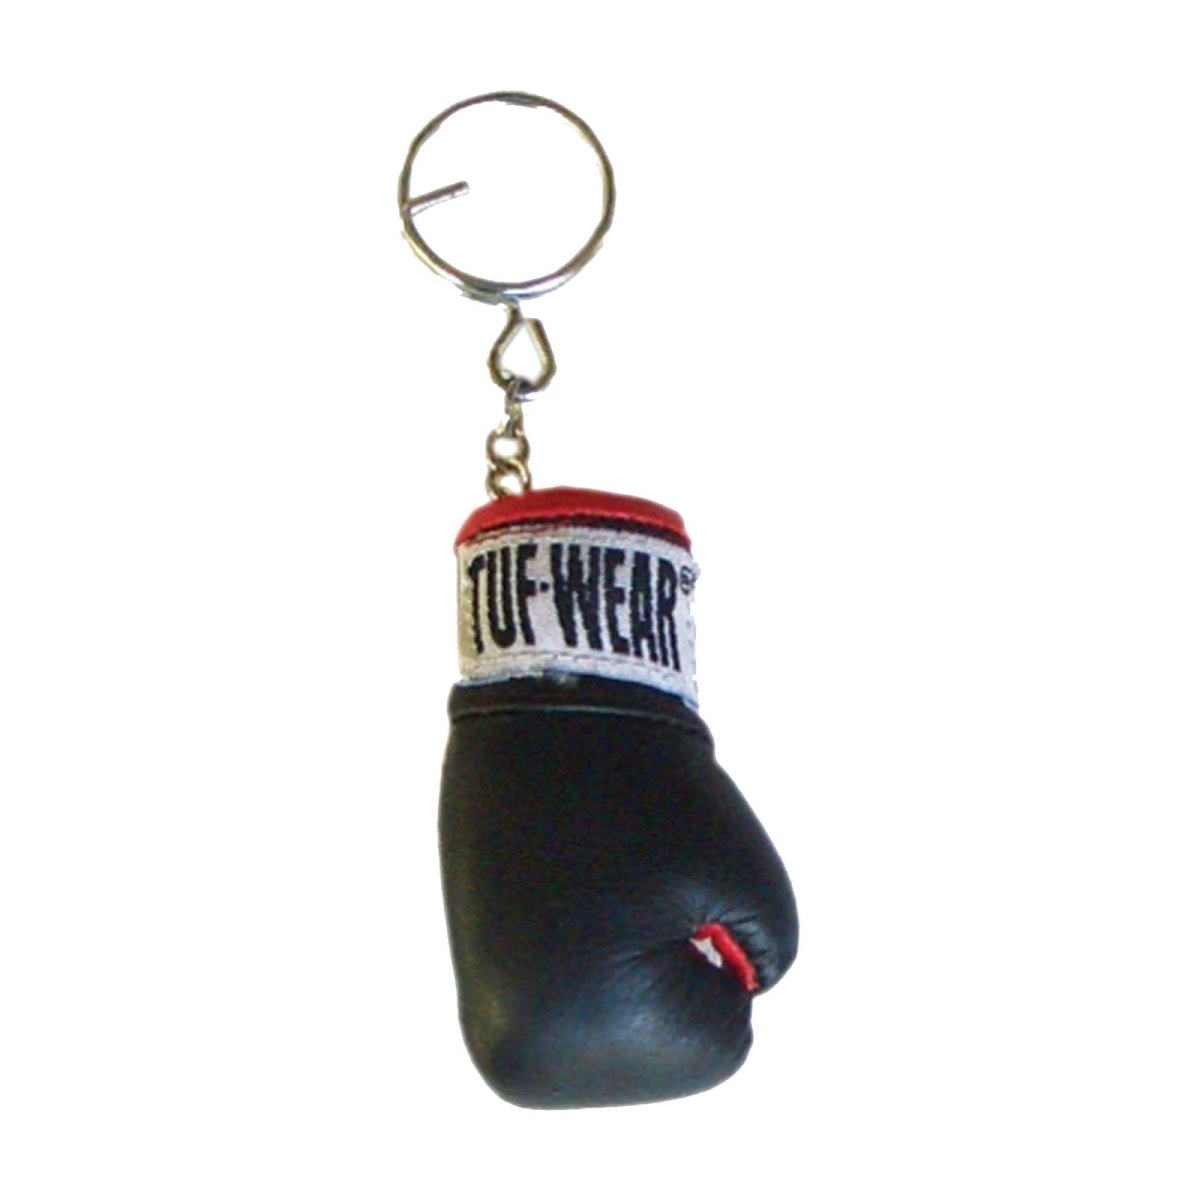 Tuf-Wear Boxhandschuhe Schlüsselanhänger - sportyglee